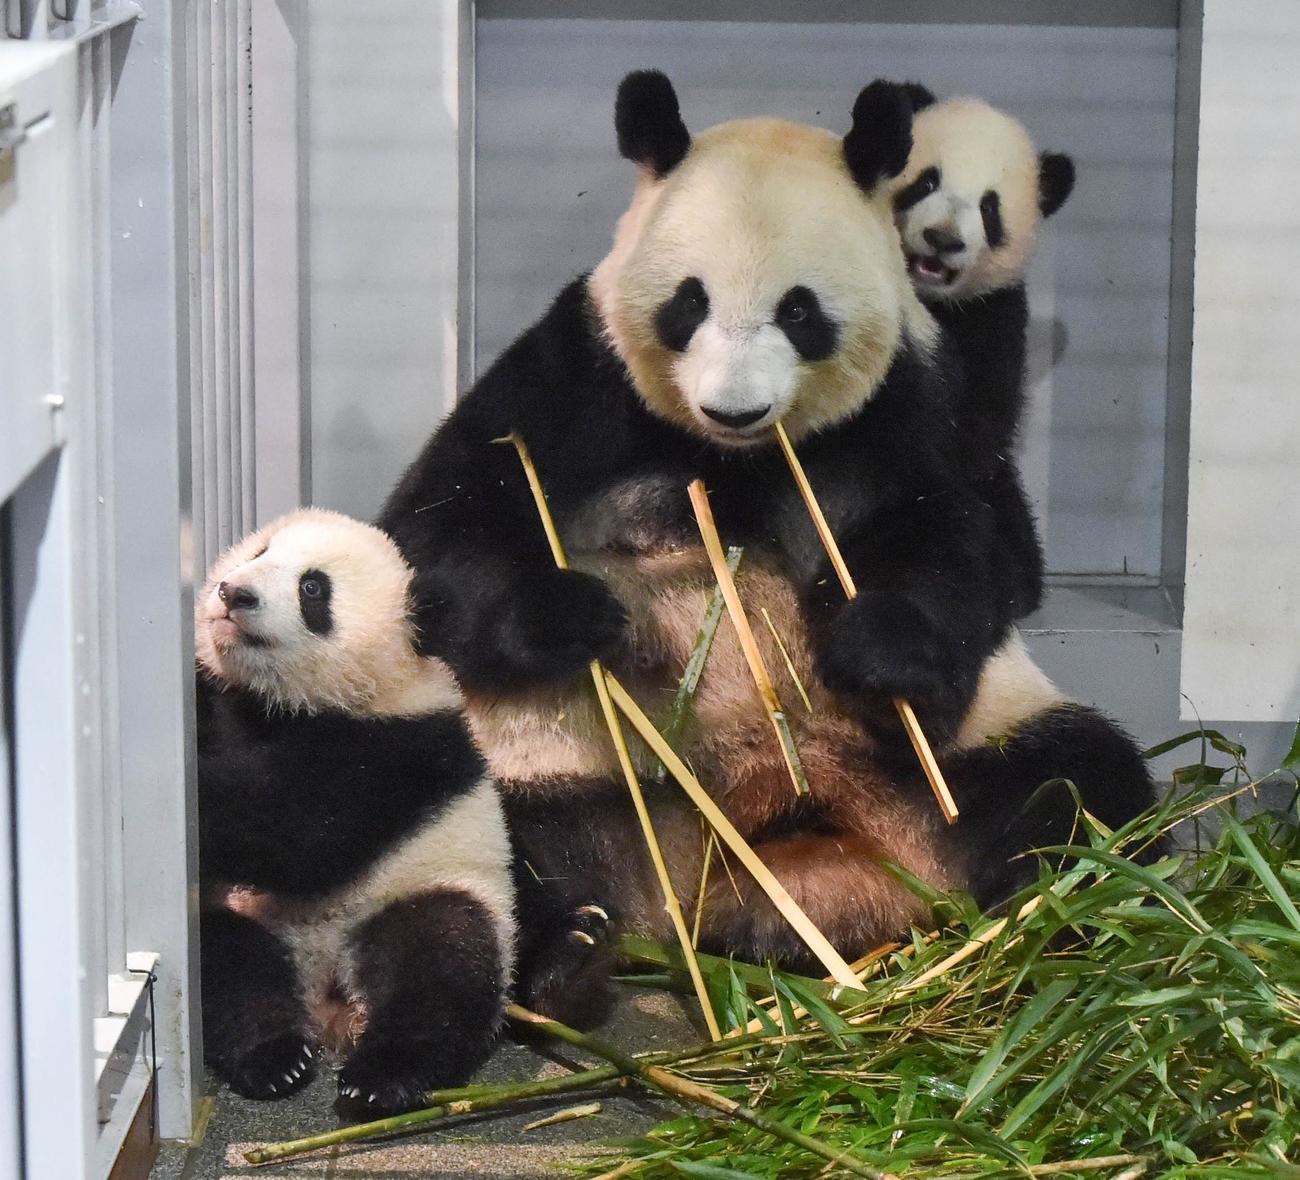 上野動物園、ジャイアントパンダの母子。左から雌レイレイ、母親シンシン、雄シャオシャオ。166日齢、12月6日撮影（東京動物園協会提供）